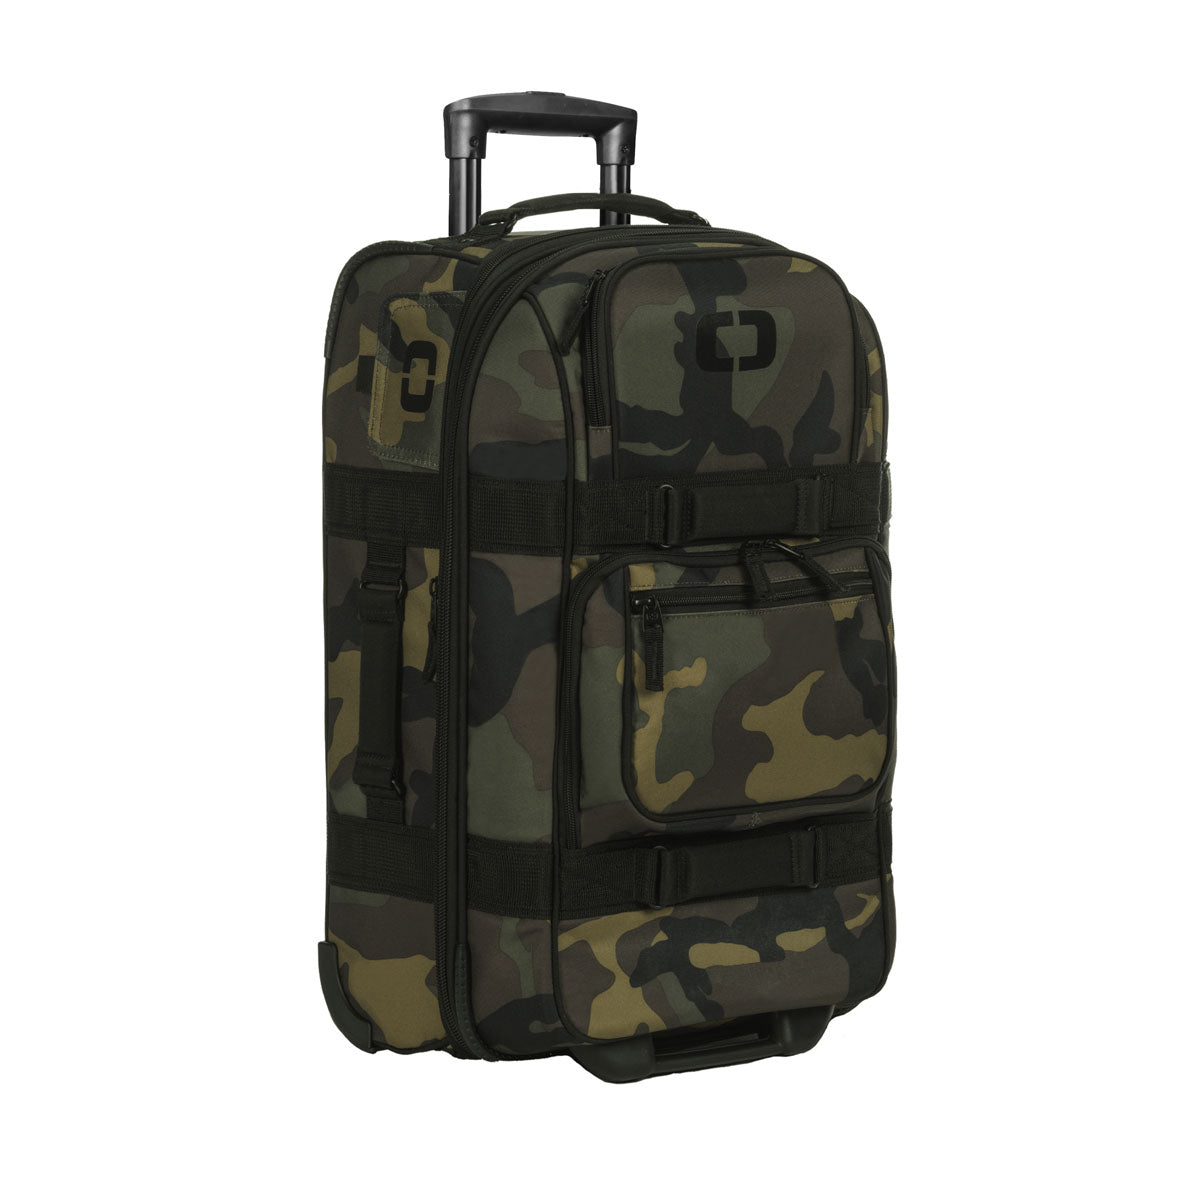 Ogio ONU 22 Carry-on Travel Bag - ExtremeSupply.com